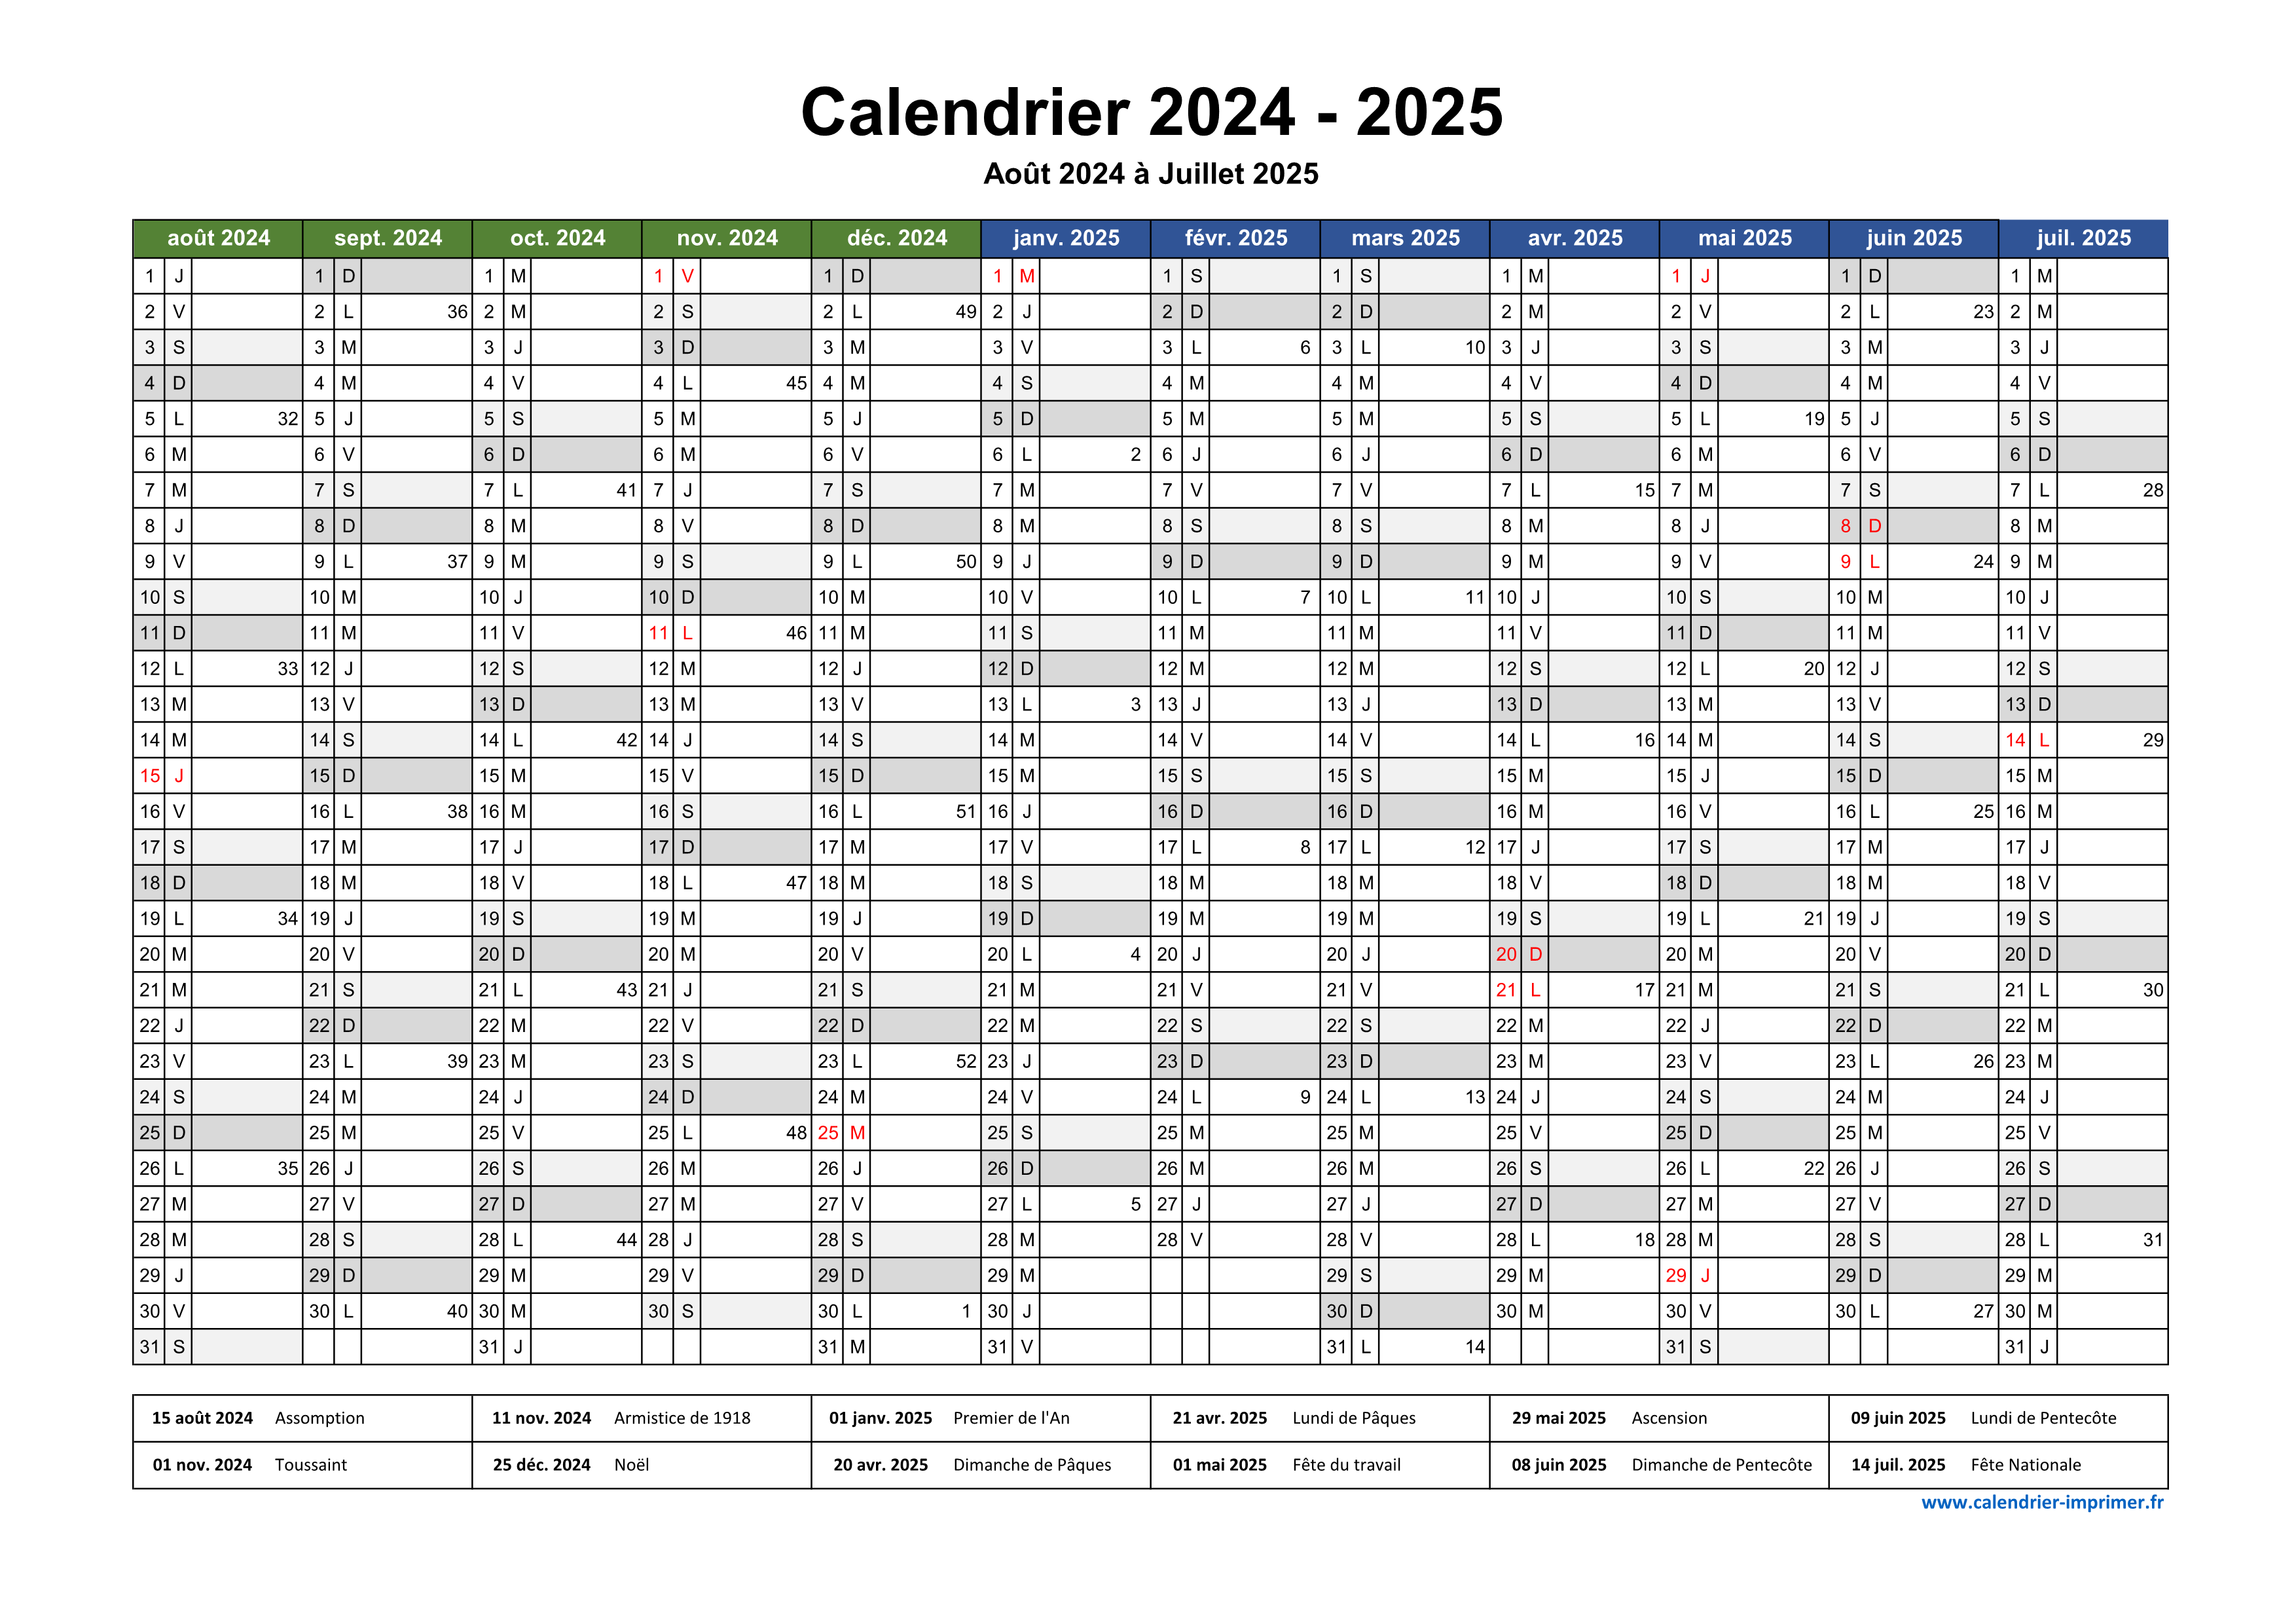 Calendrier 2024-2025 Calendrier mural, janvier 2024 - juin 2025 Calendrier,  calendrier des jours fériés 18 mois